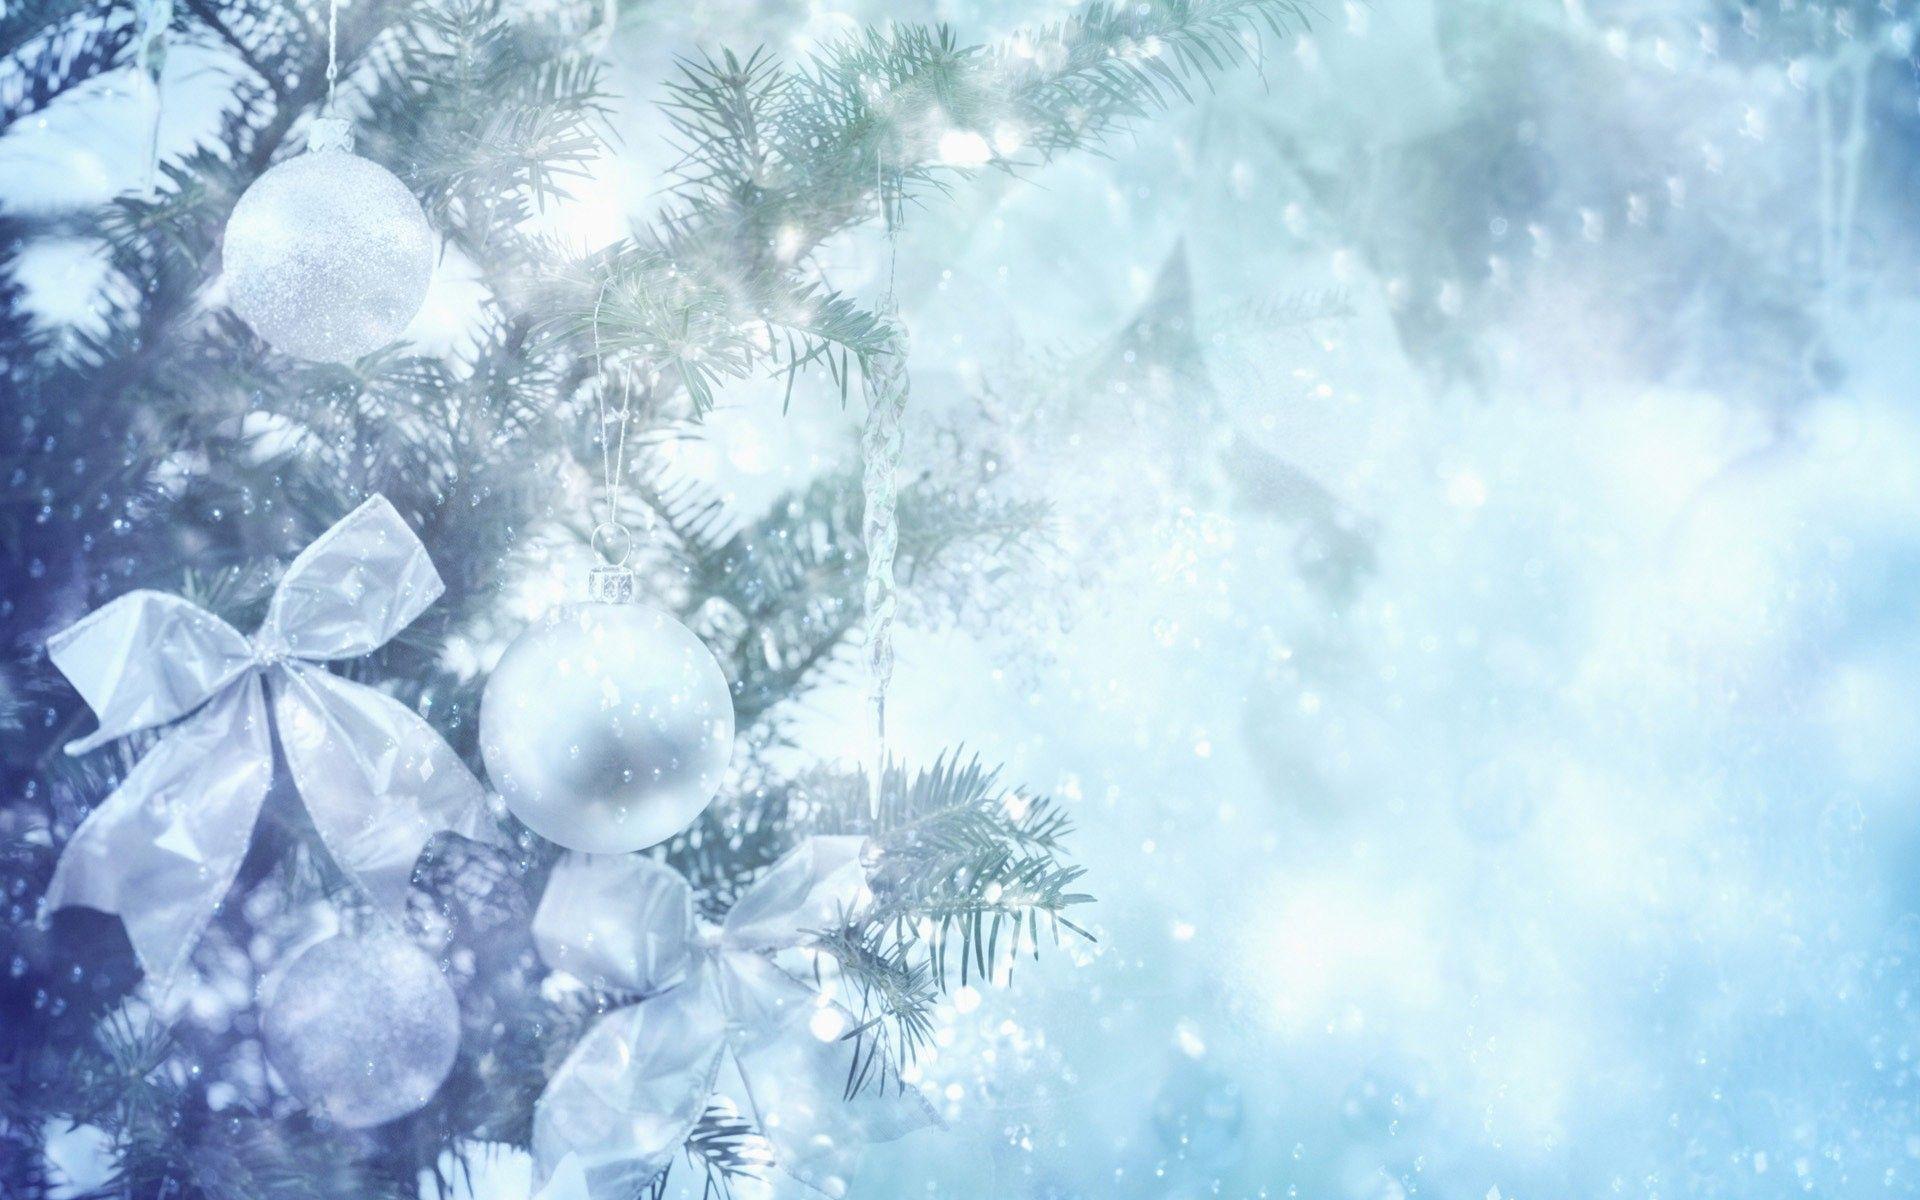 Wallpaper For > Winter Christmas Desktop Background